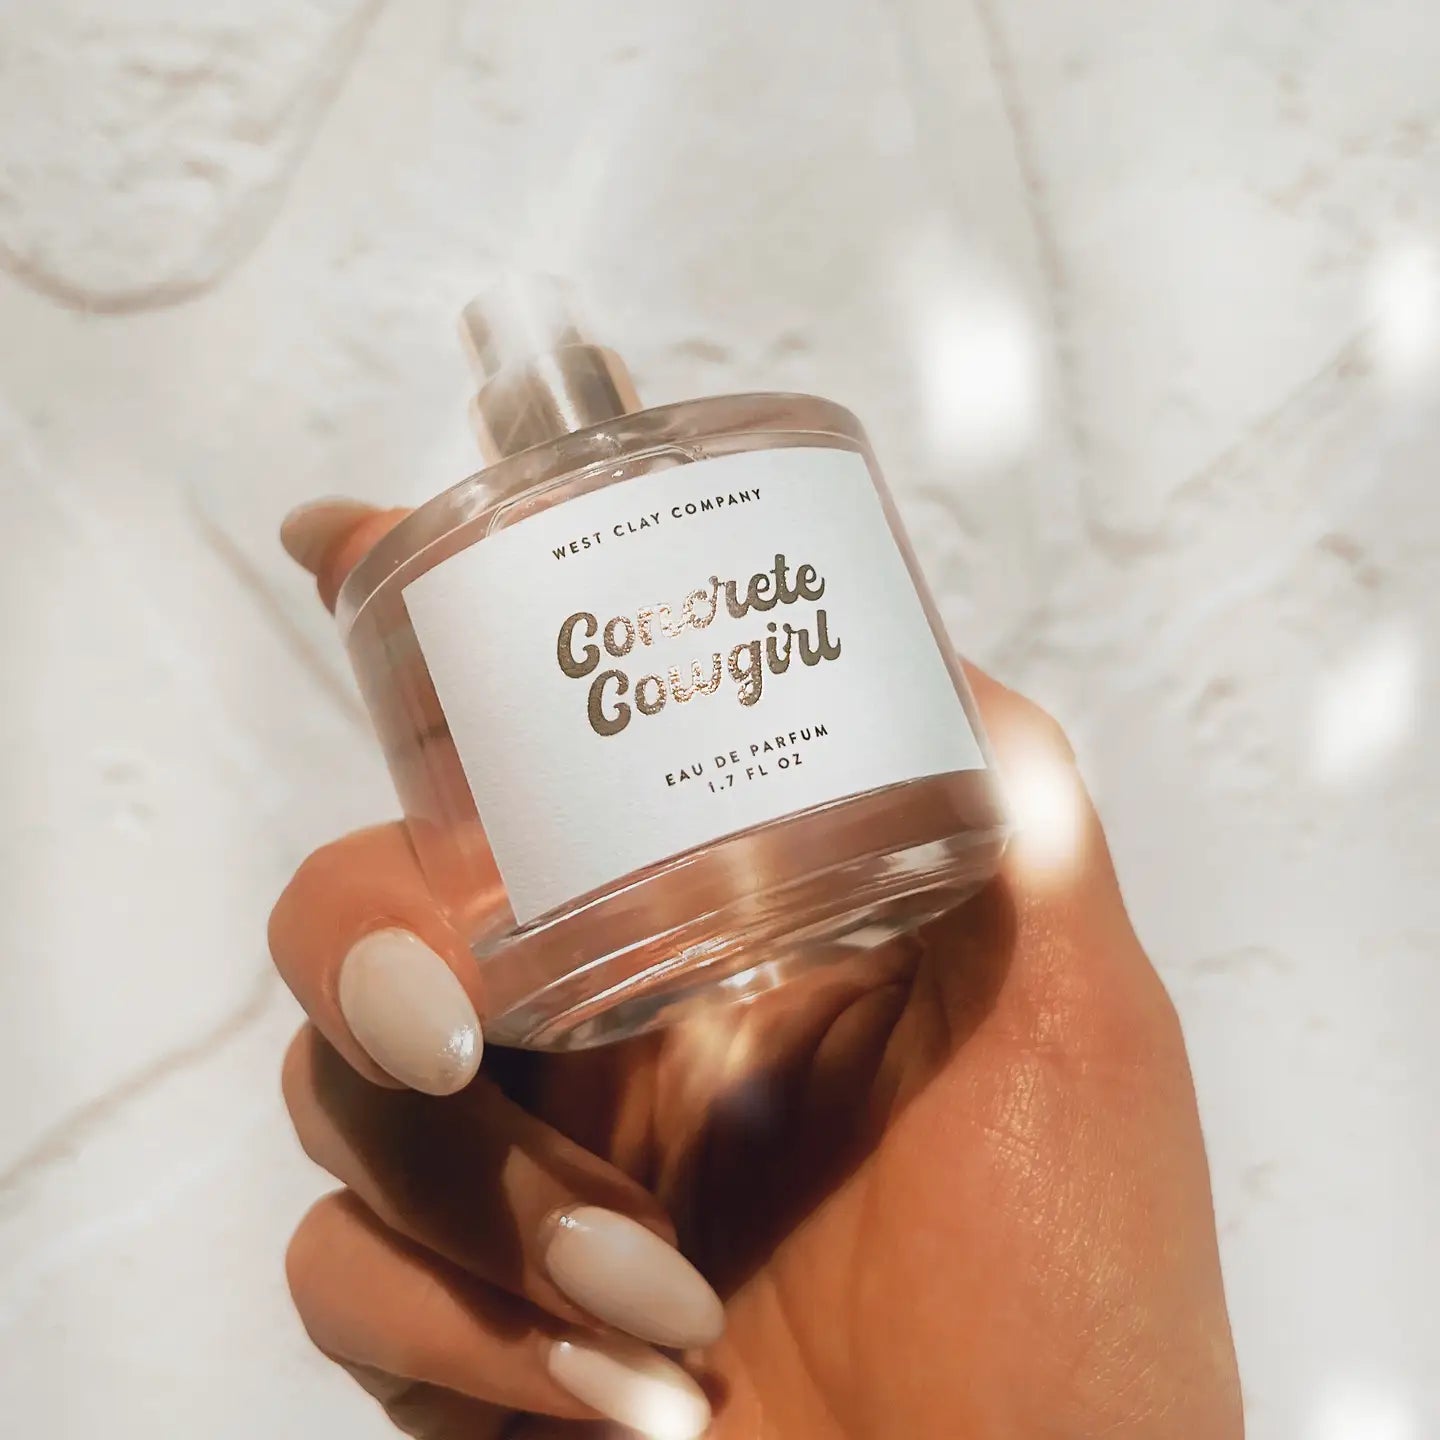 Concrete Cowgirl ⚡️ Perfume - Nontoxic Eau De Parfum 1.7oz